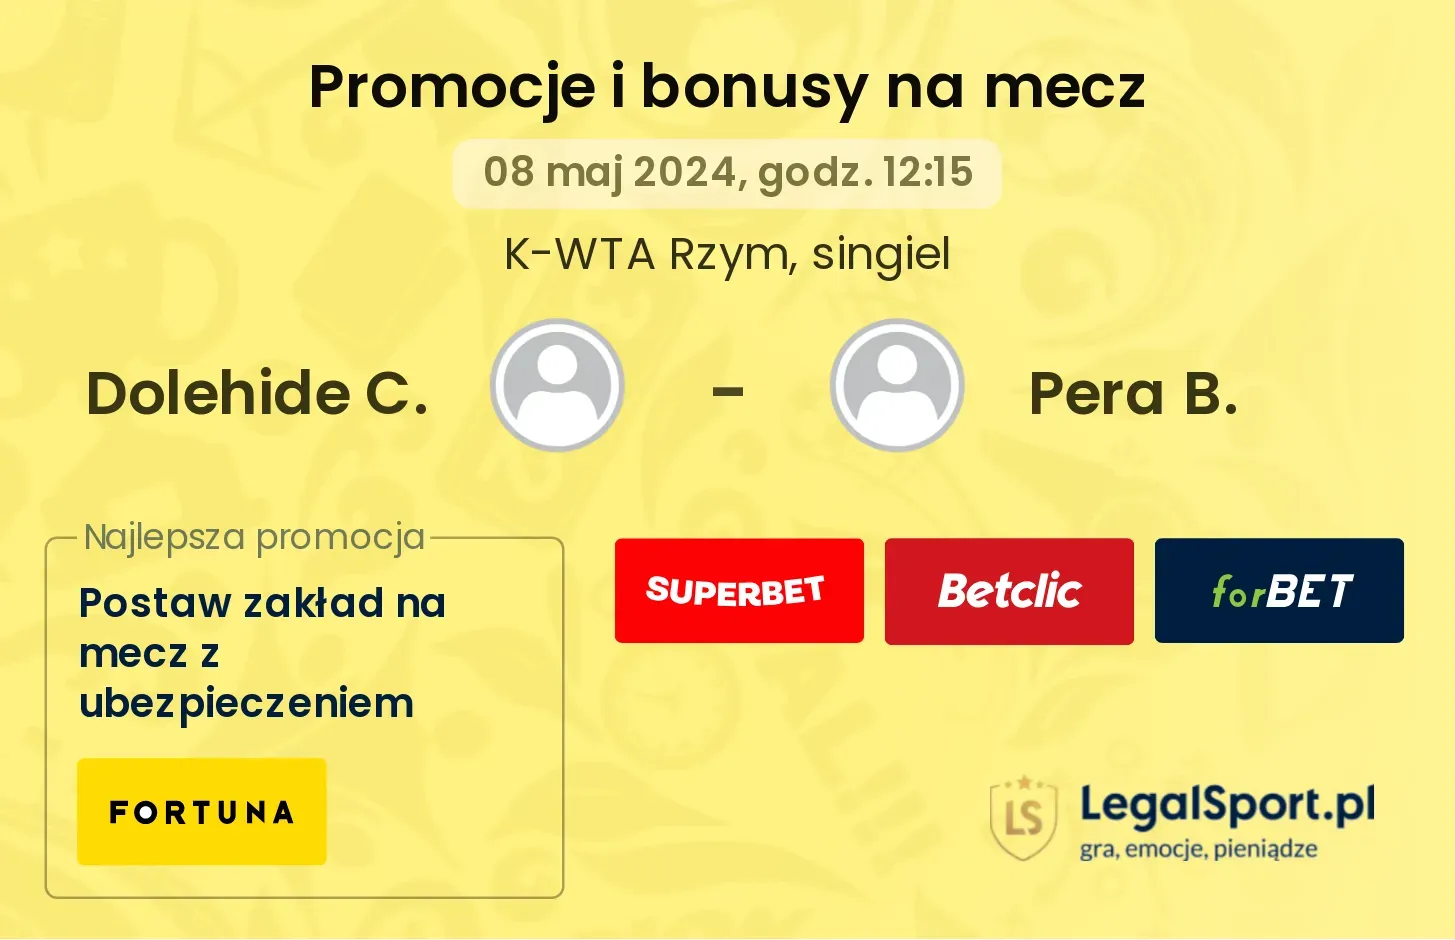 Dolehide C. - Pera B. promocje bonusy na mecz